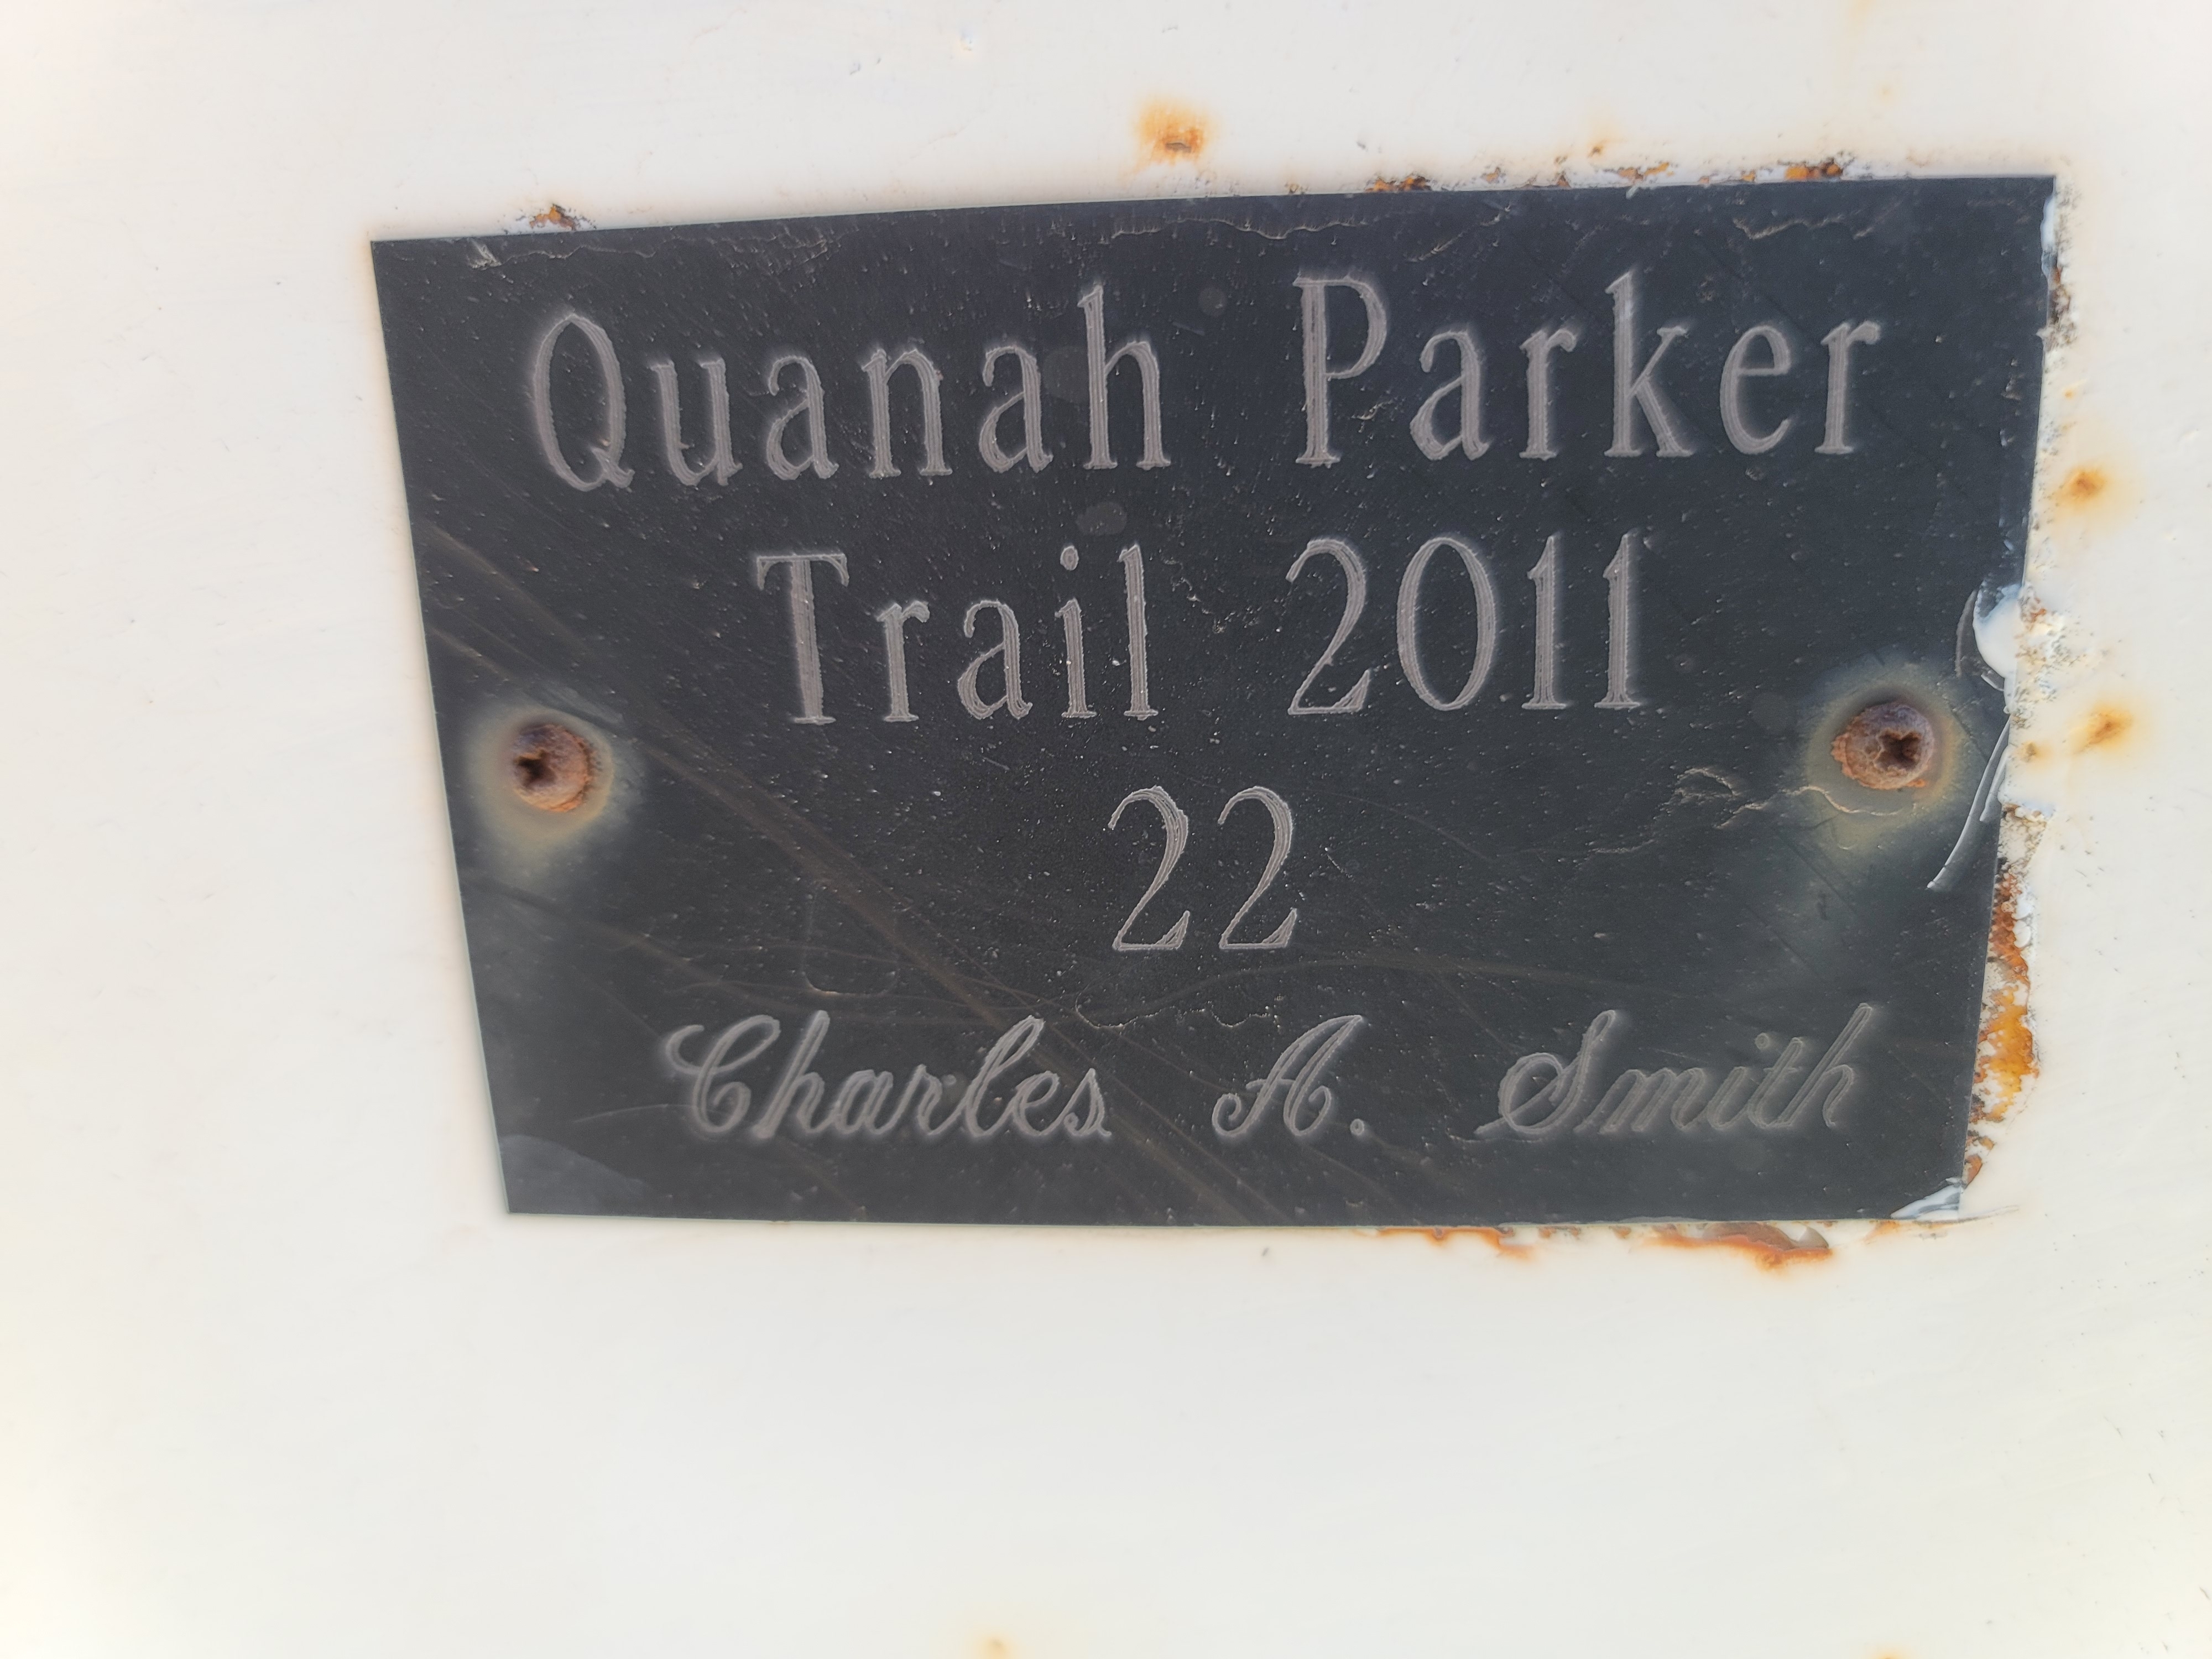 Quanah Parker Trail Marker 22